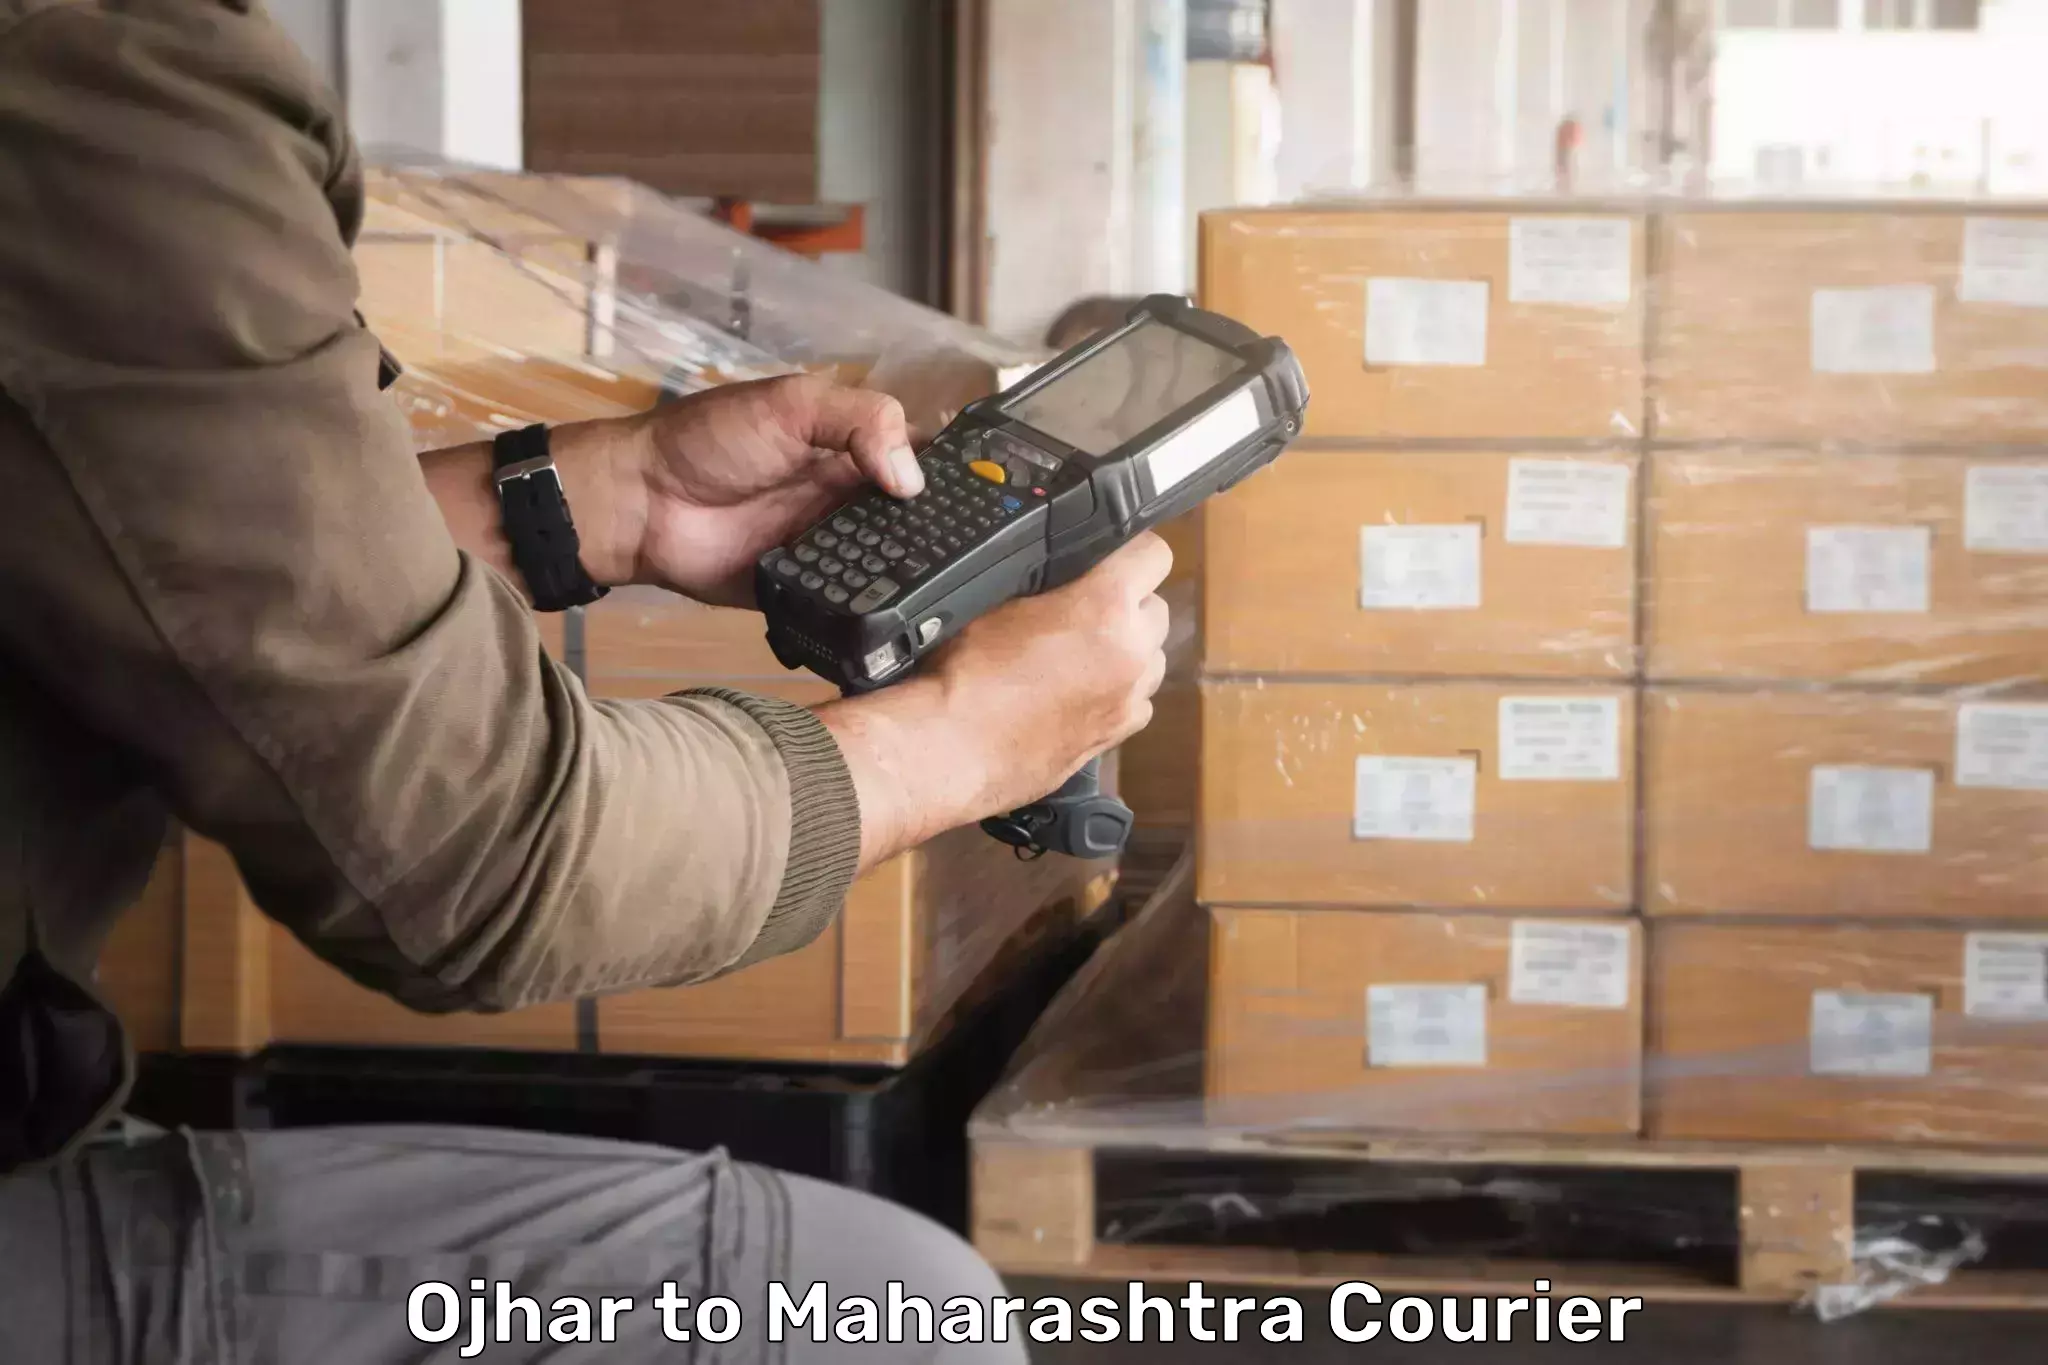 Seamless shipping experience Ojhar to Maharashtra